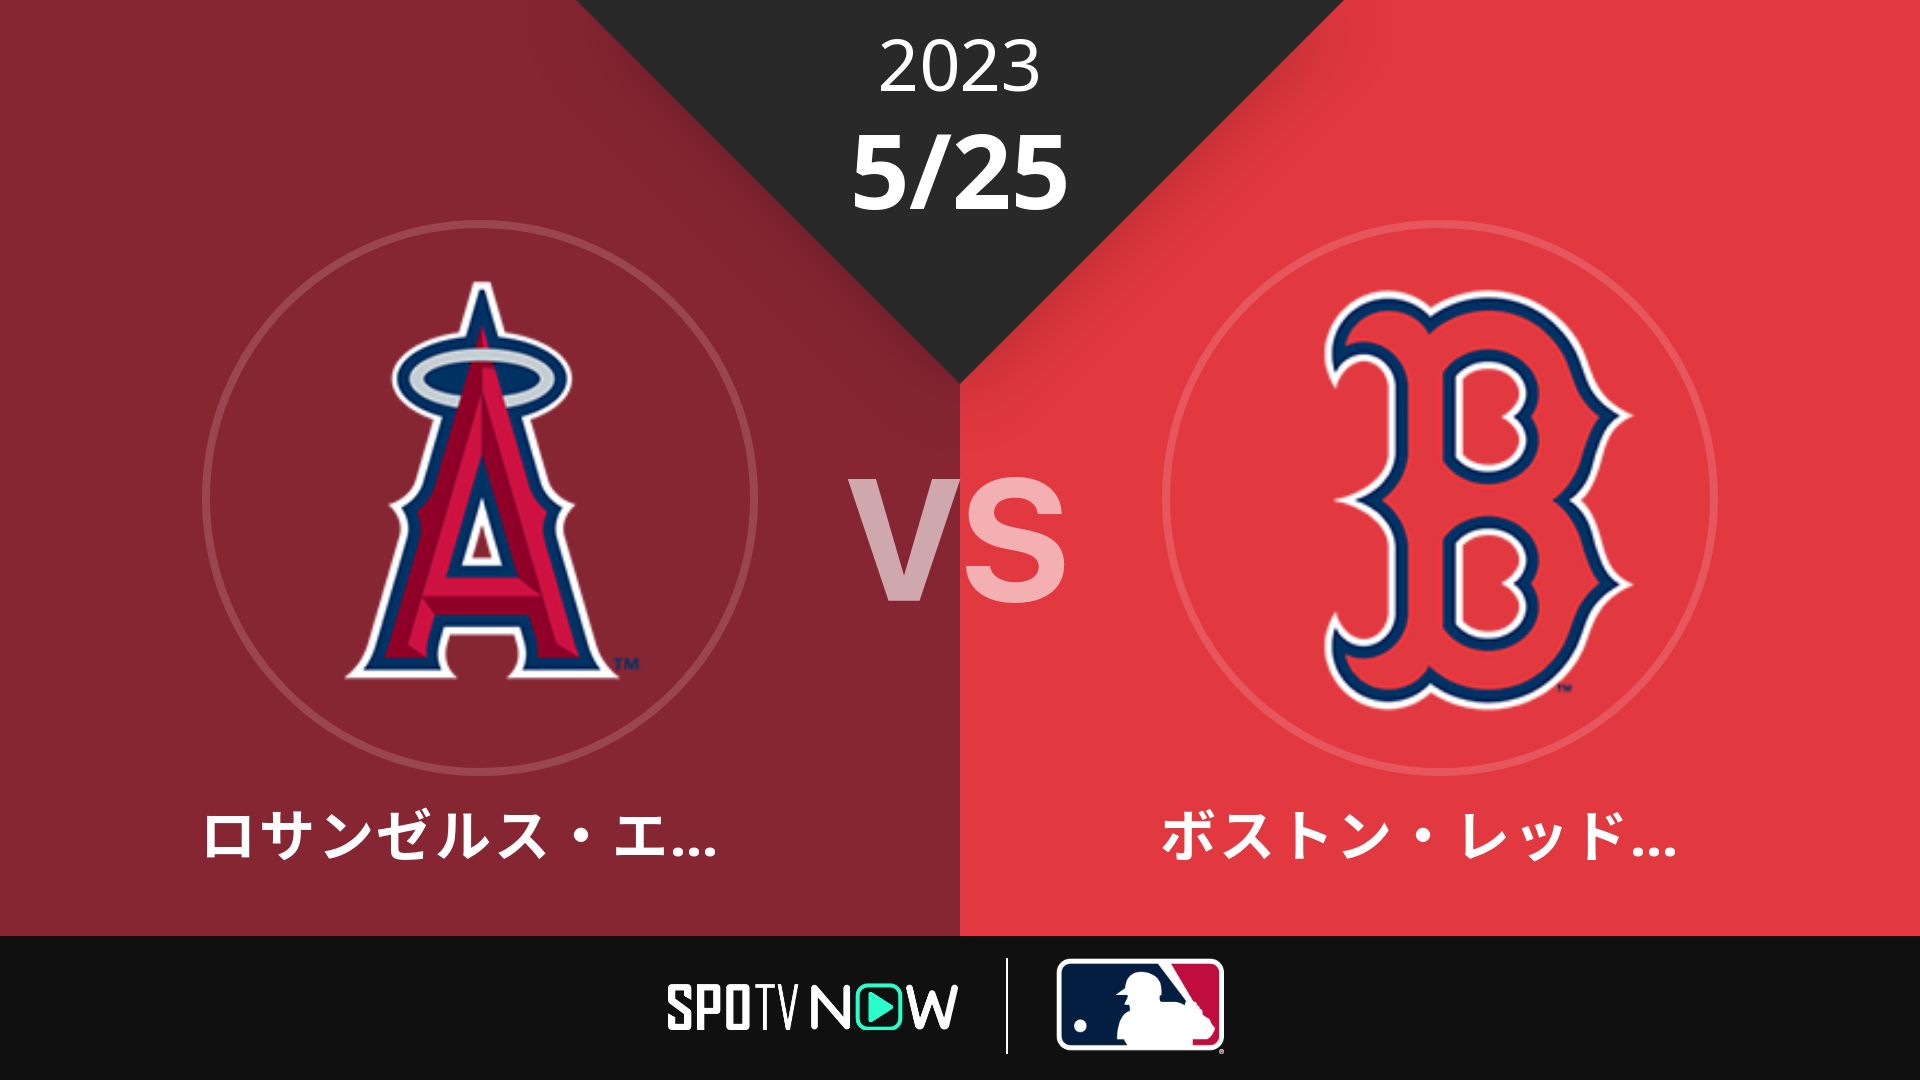 2023/5/25 エンゼルス vs Rソックス [MLB]